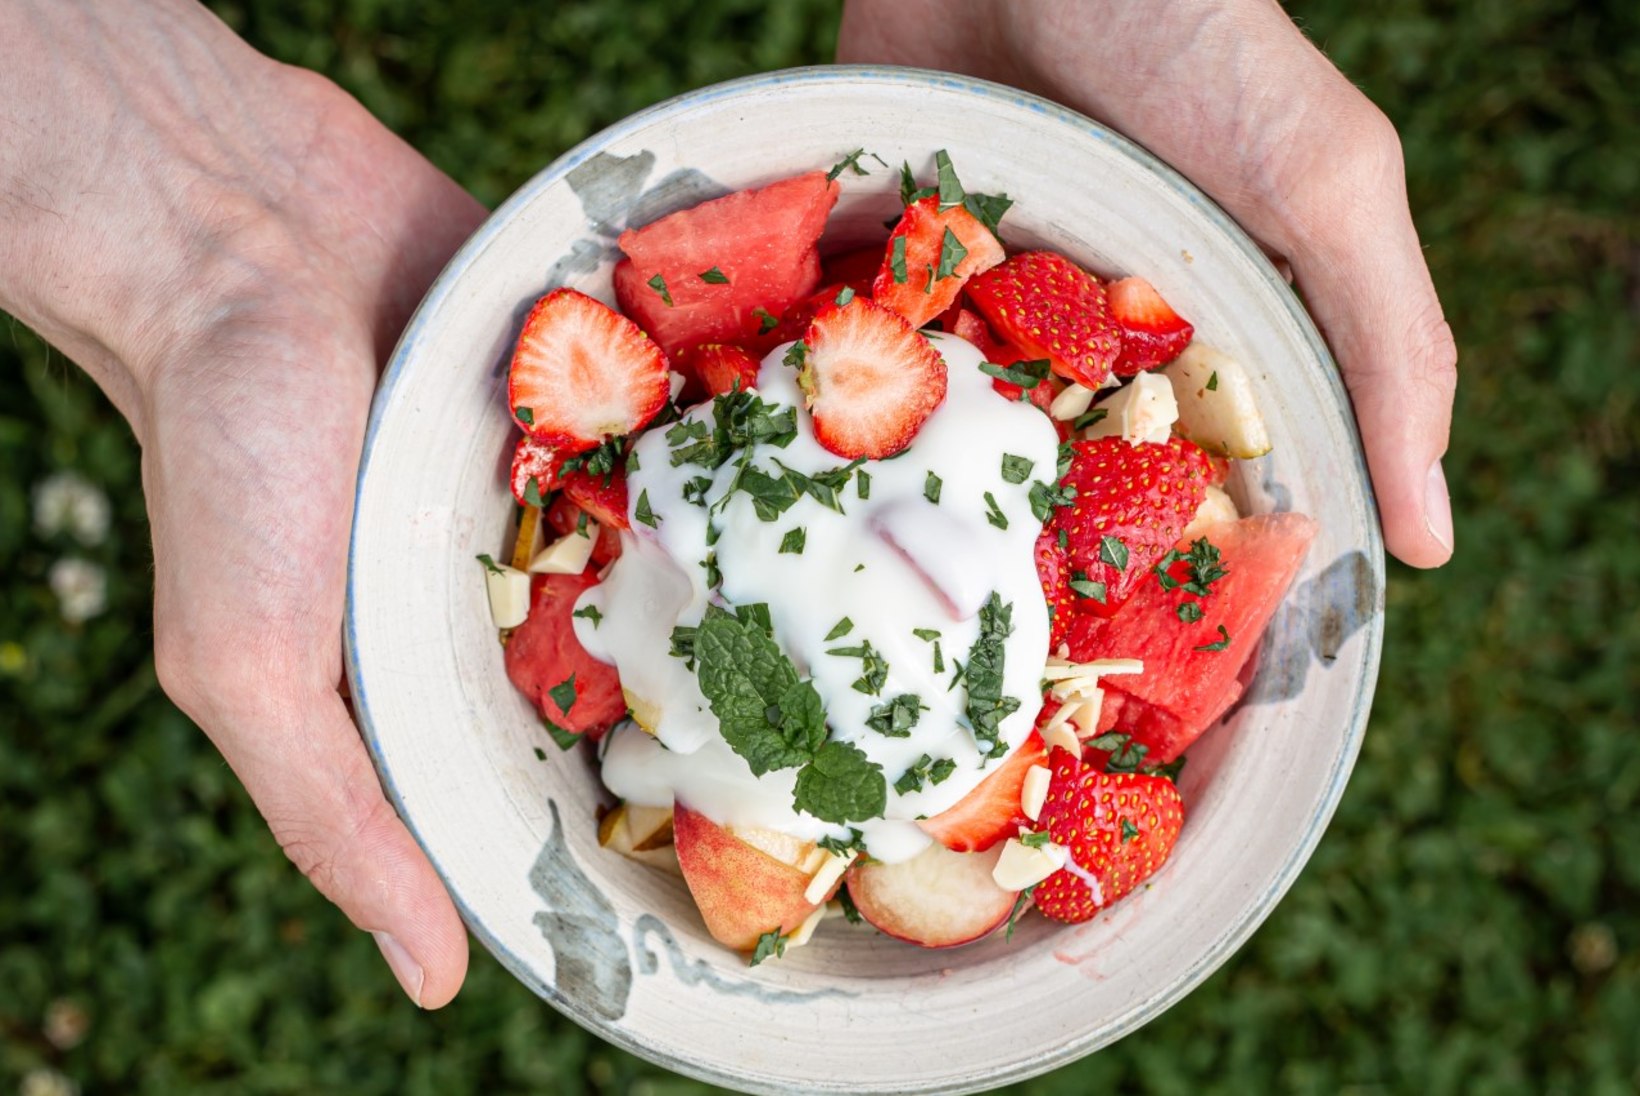 Suvised maasikasalatid – 15 minutit ja valmis!